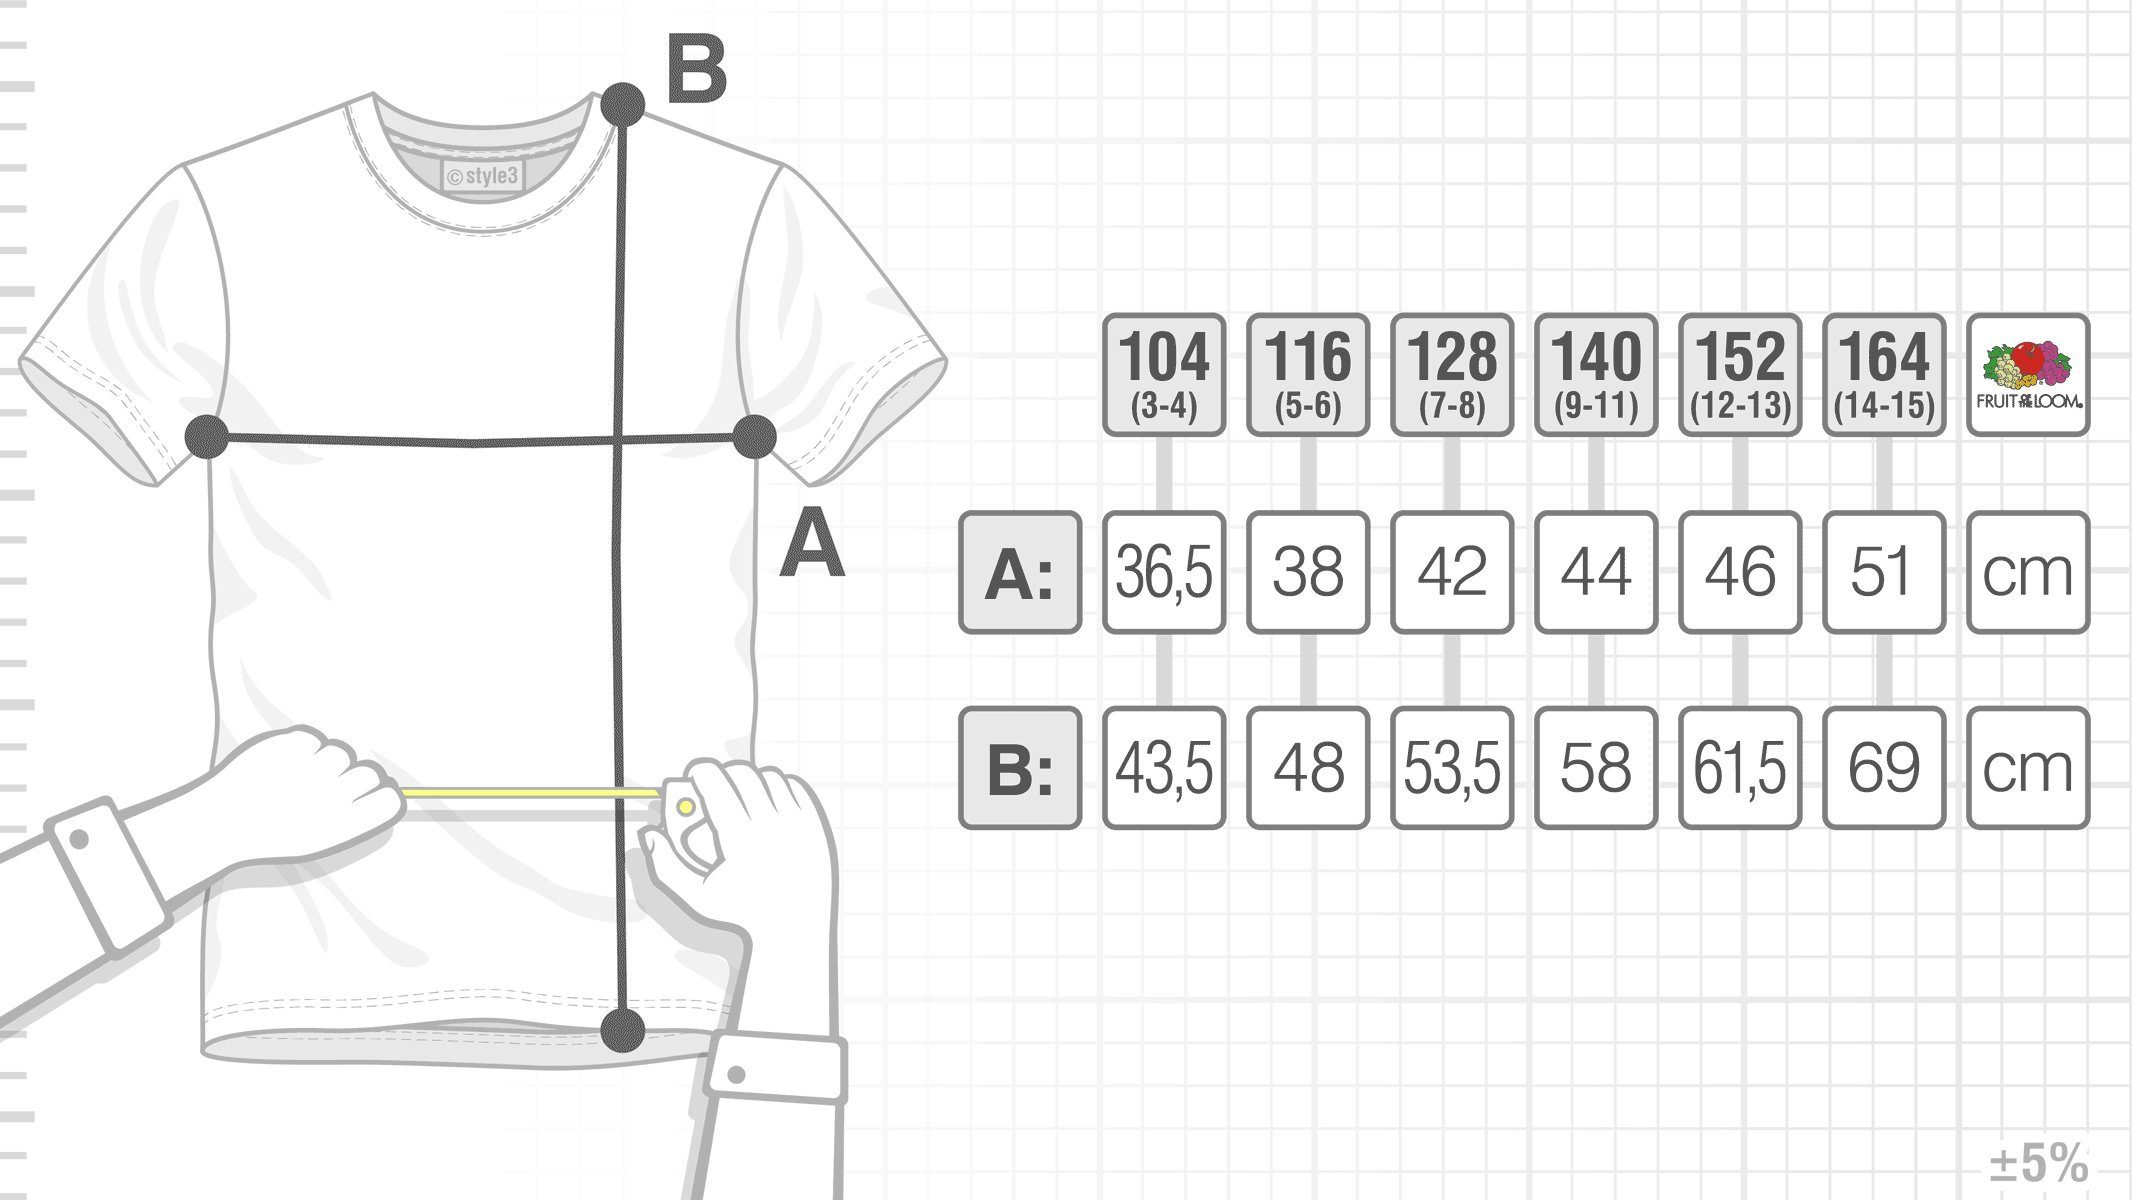 Vitruvianischer Link Print-Shirt zelda snes legend style3 ocarina nes Kinder weiß T-Shirt